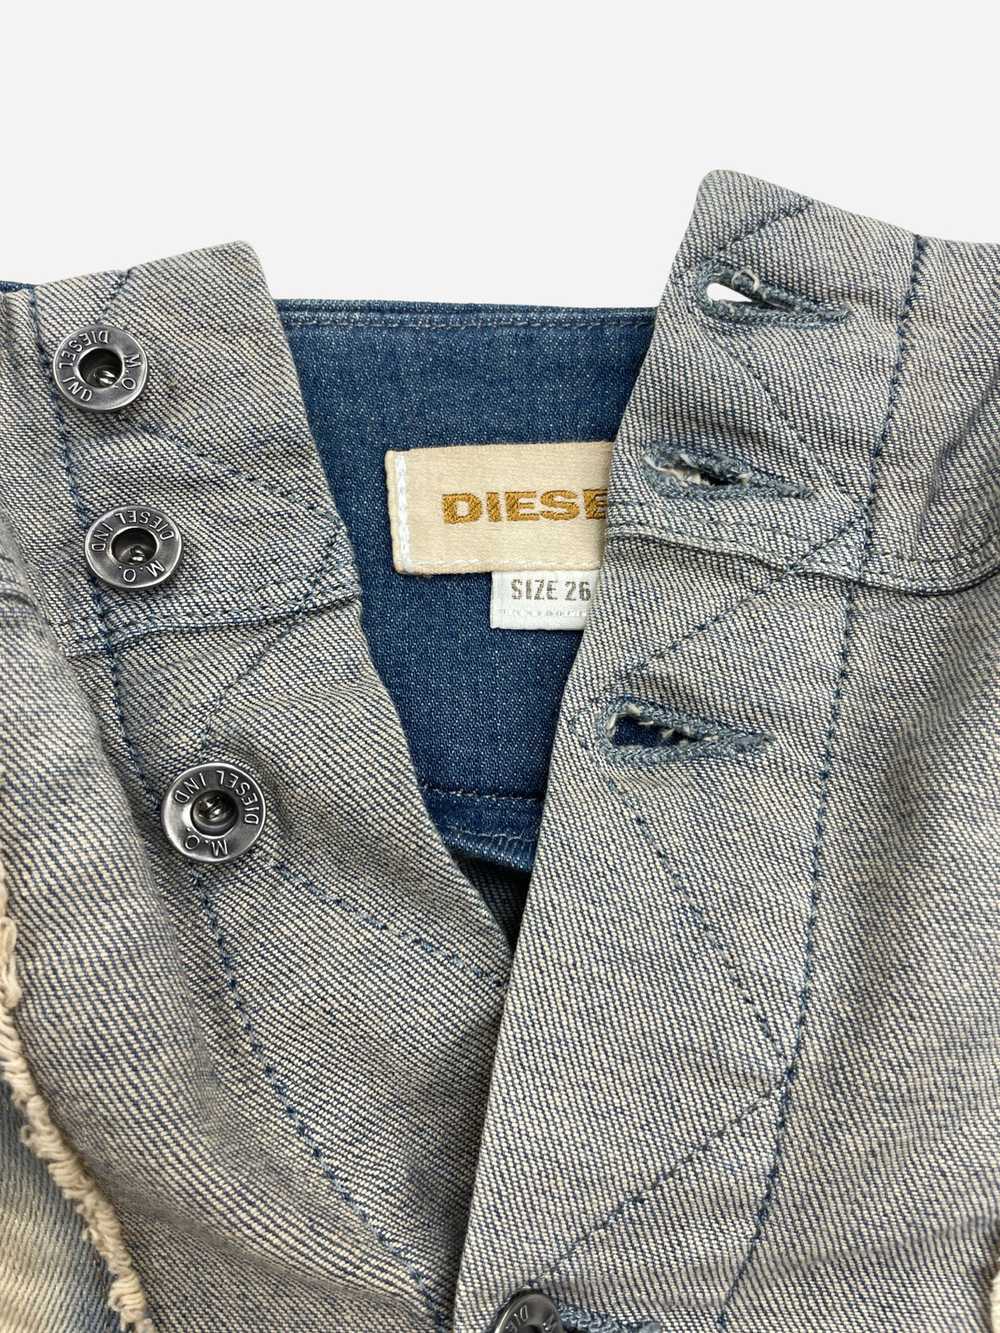 Diesel Denim Mini Skirt - image 2